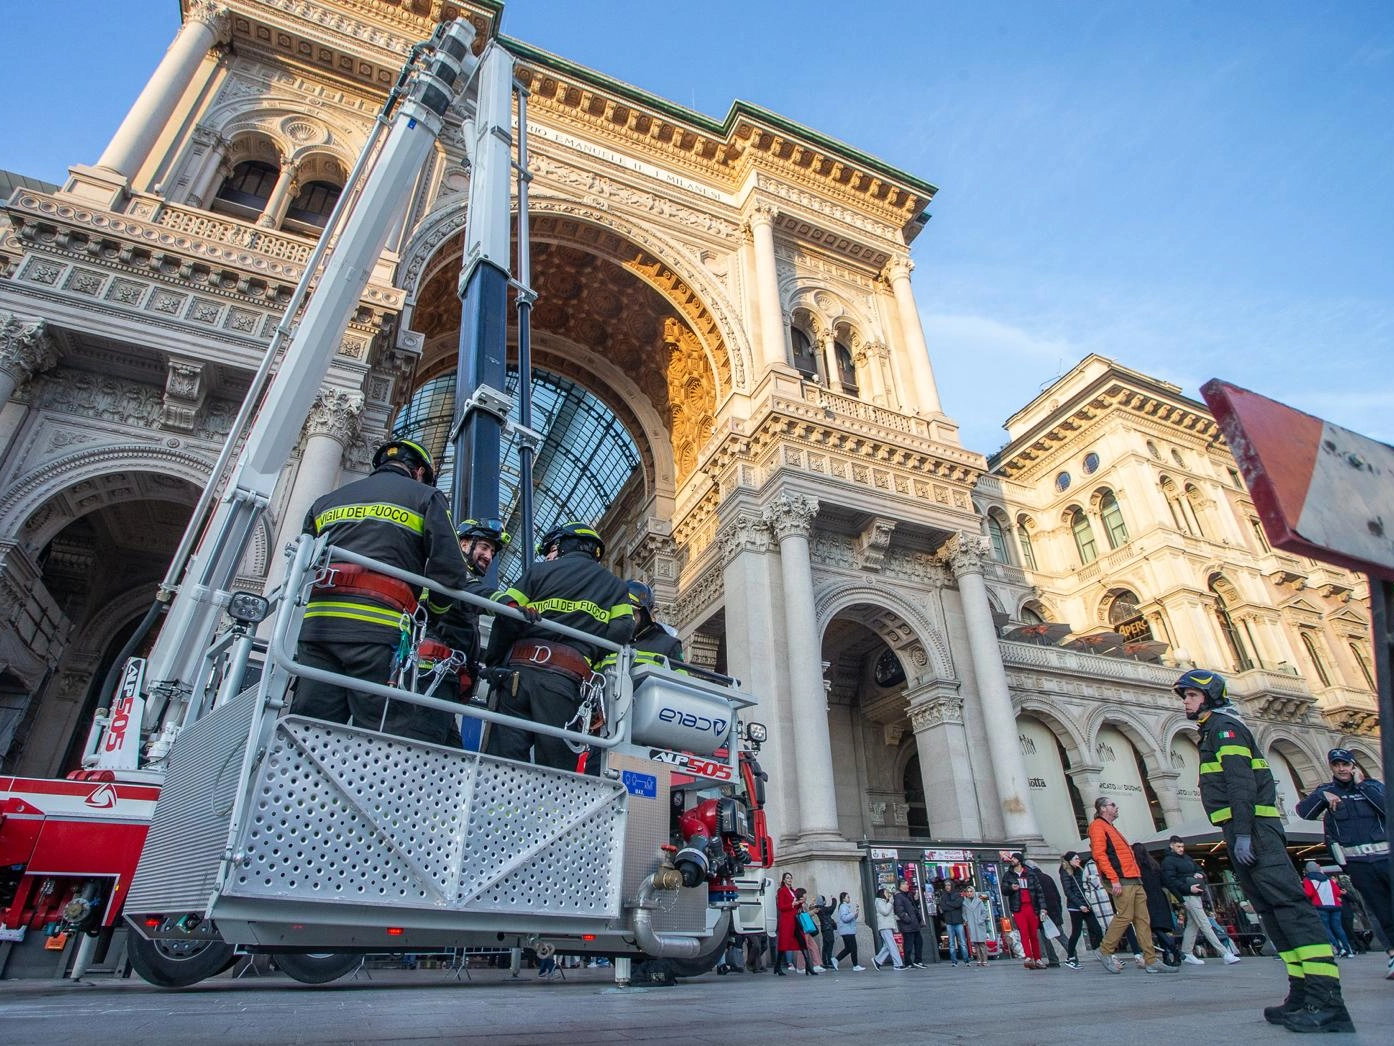 L'intervento dei Vigili del fuoco in Galleria Vittorio Emanuele (Foto Canella)